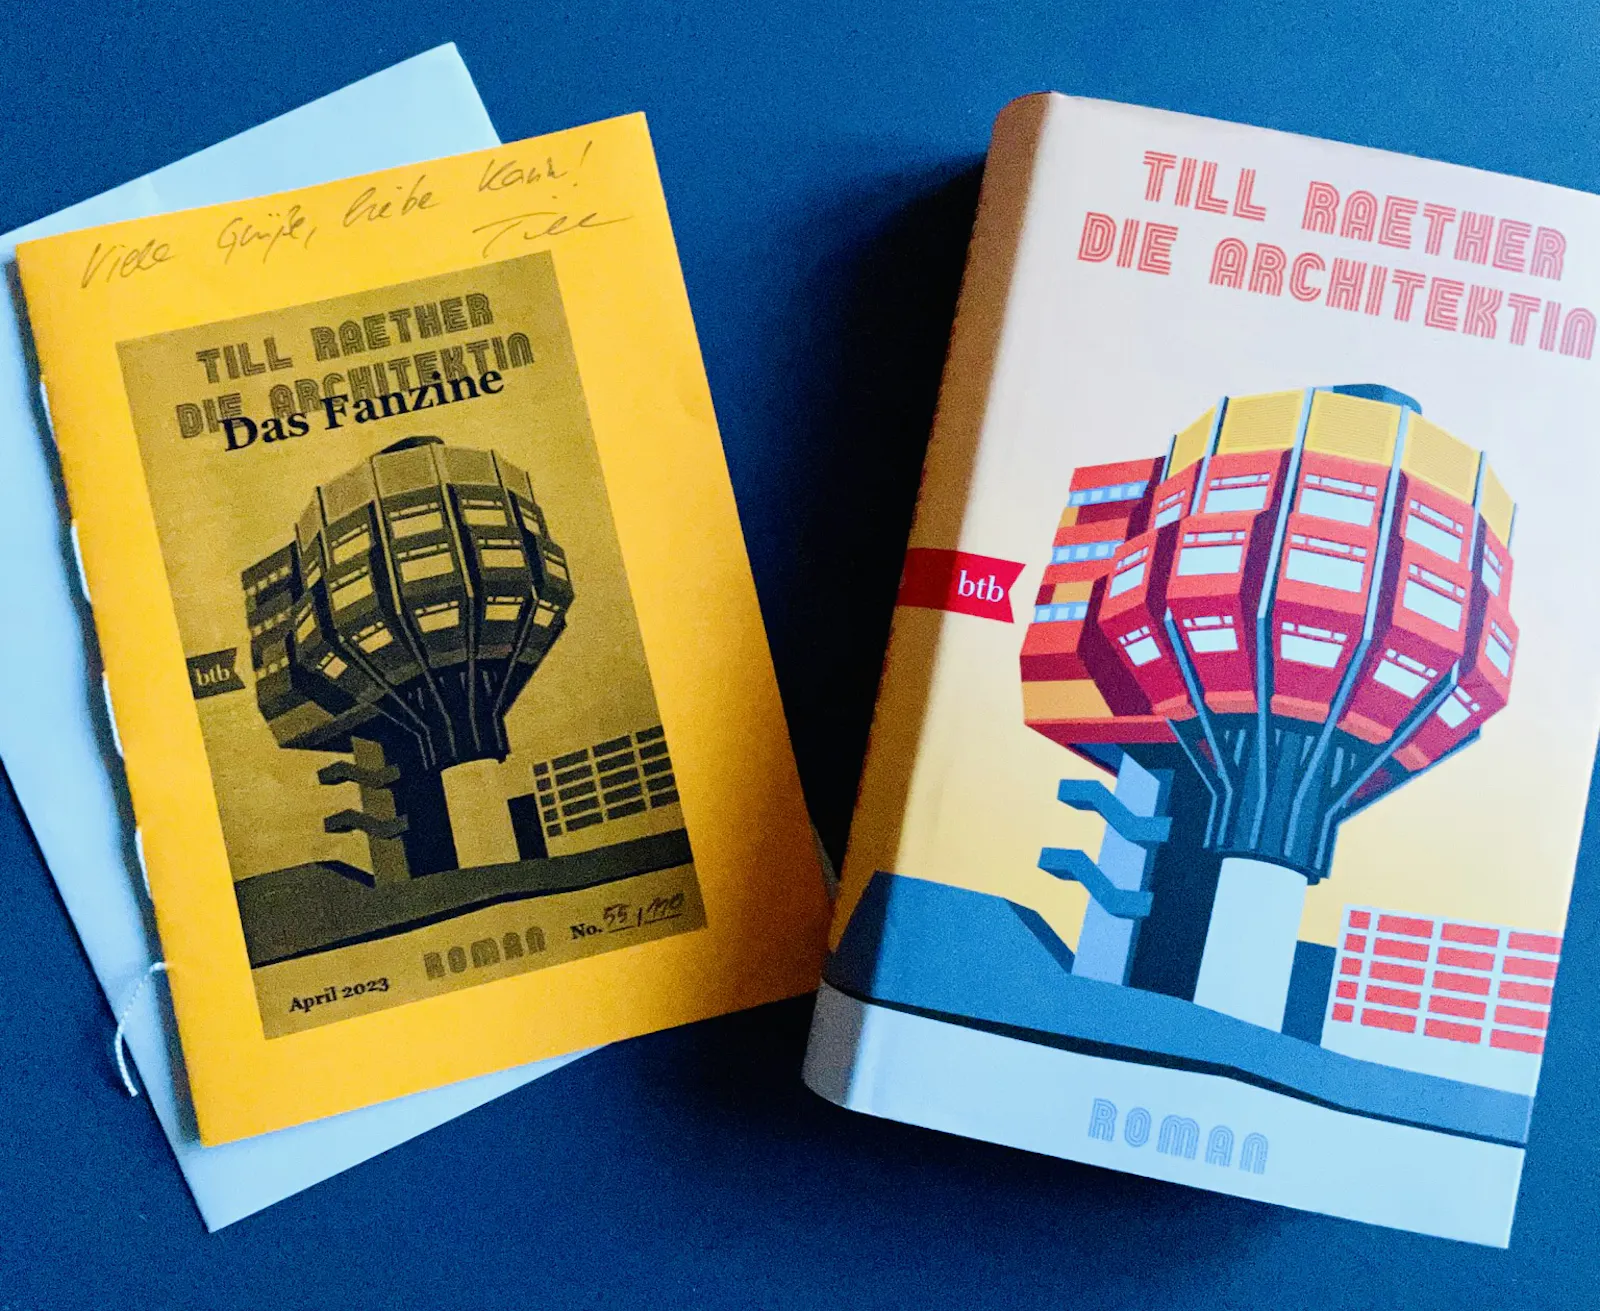 Der neue Roman "Die Architektin" von Till Raehter mit einem vom Autor gestalteten Fanzine.